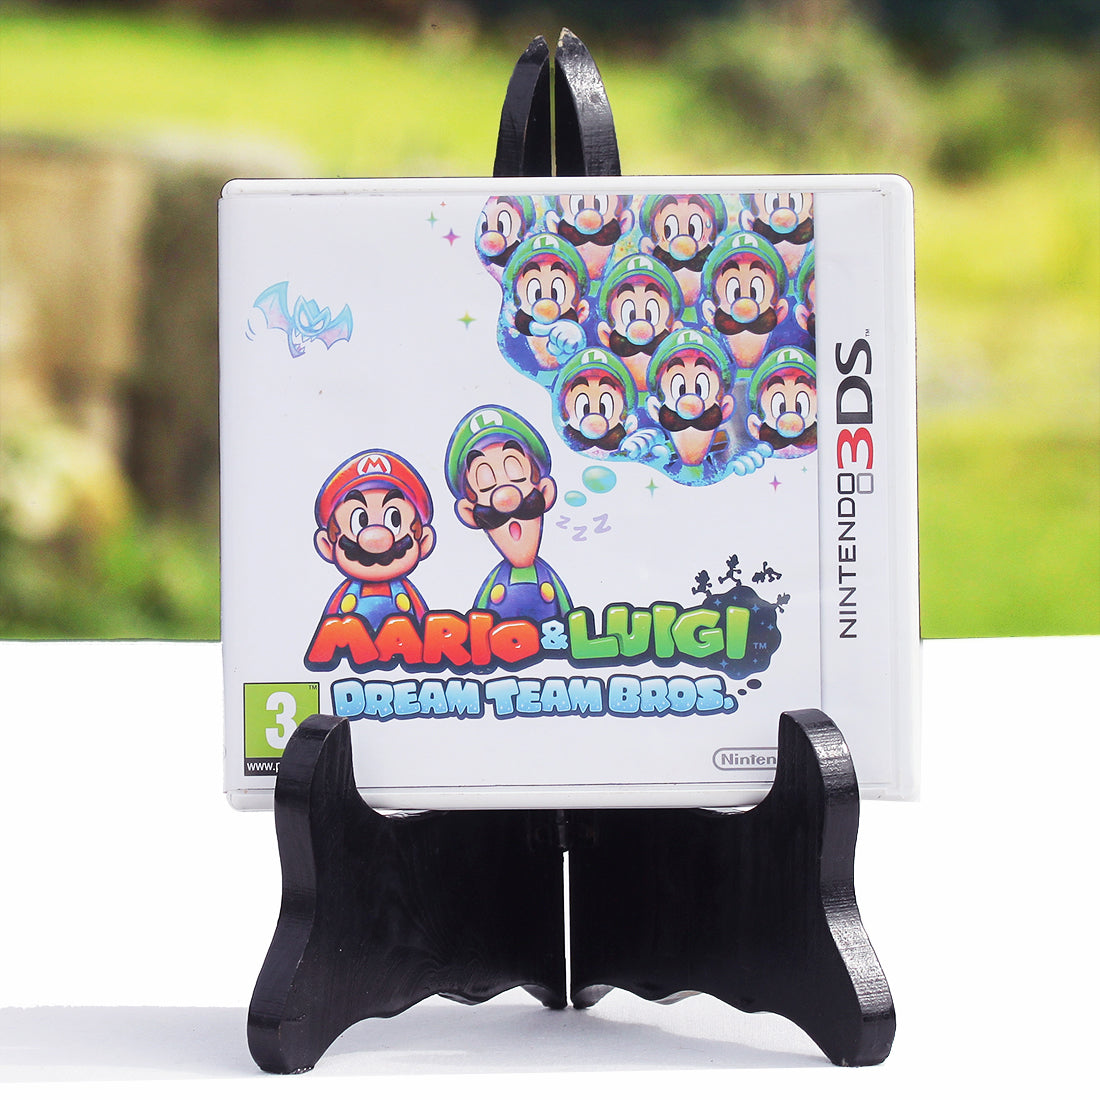 Jeu vidéo Nintendo 3DS Mario & Luigi Dream Team Bros